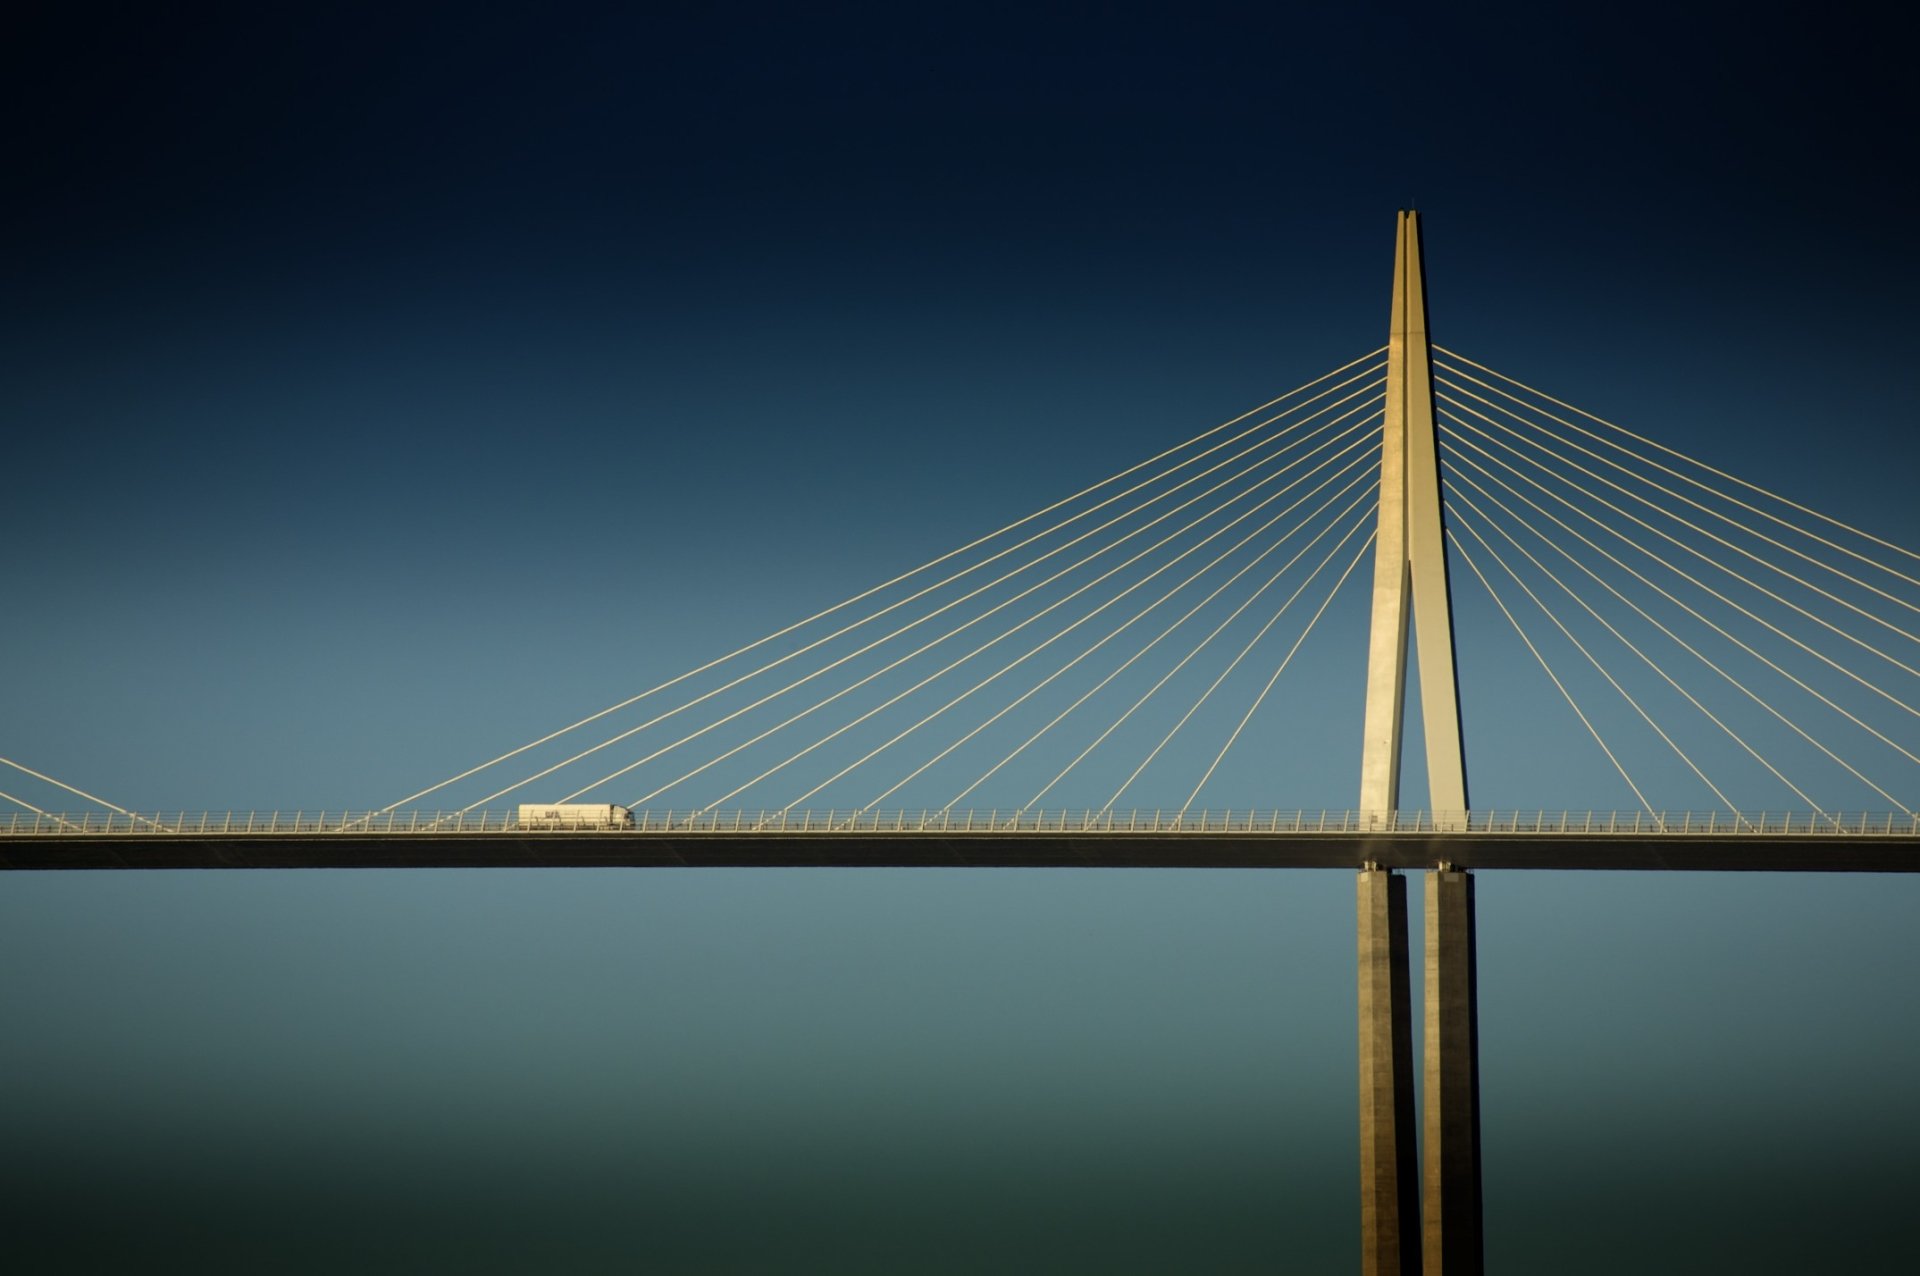 تصویر منحصر به فرد از پل میلو با رنگ طلایی 